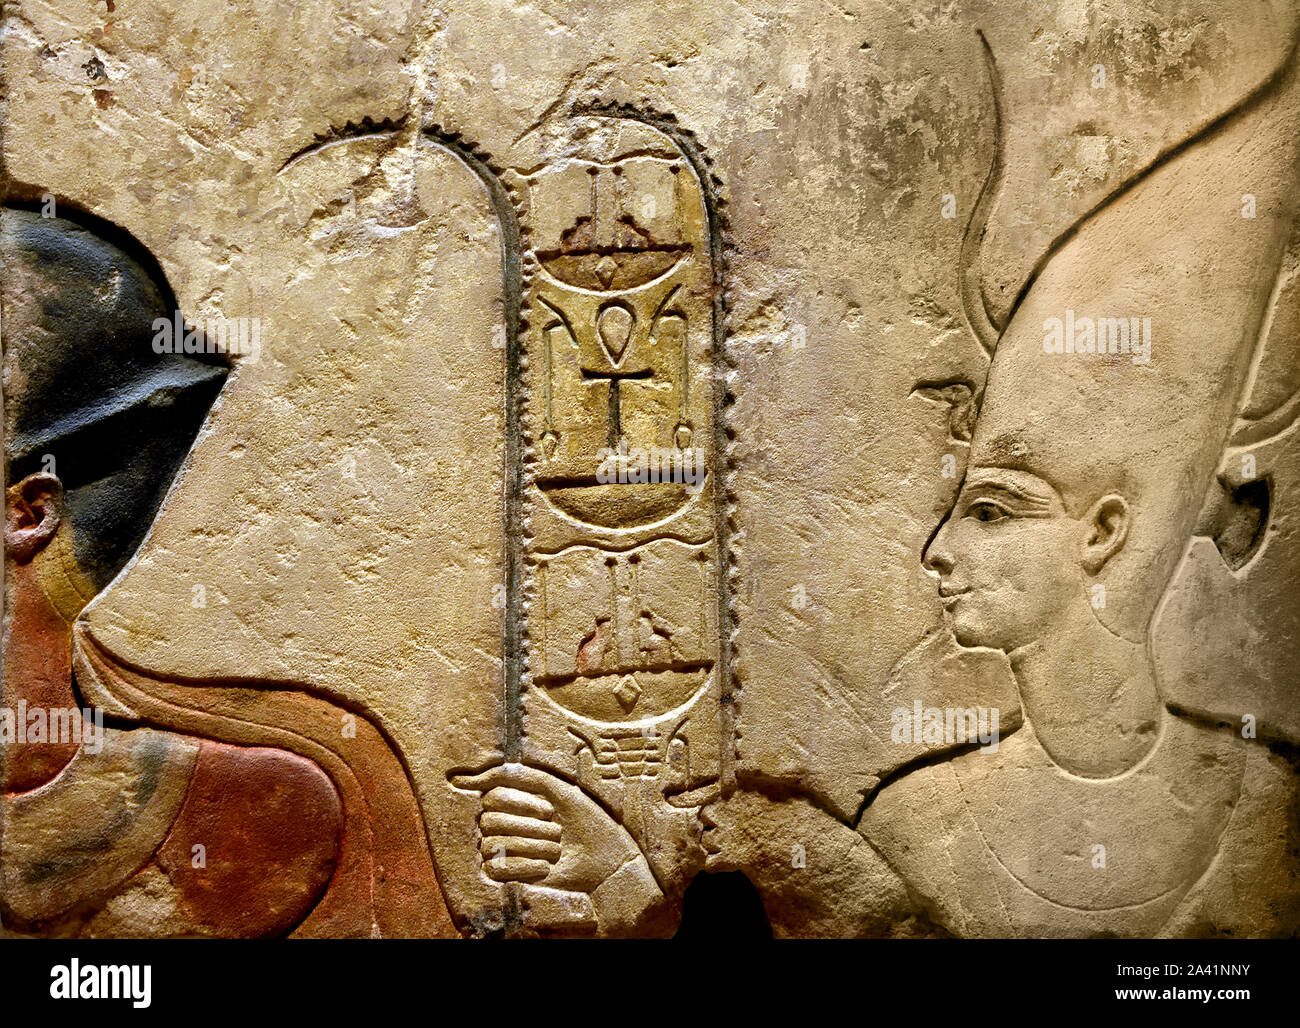 Déesse Satet Bas-reliefs du temple de la déesse Satet à Éléphantine règne d'Hatchepsout et de Thoutmosis III, 18ème dynastie, Assouan Éléphantine. L'Égypte, l'Égyptien. Banque D'Images